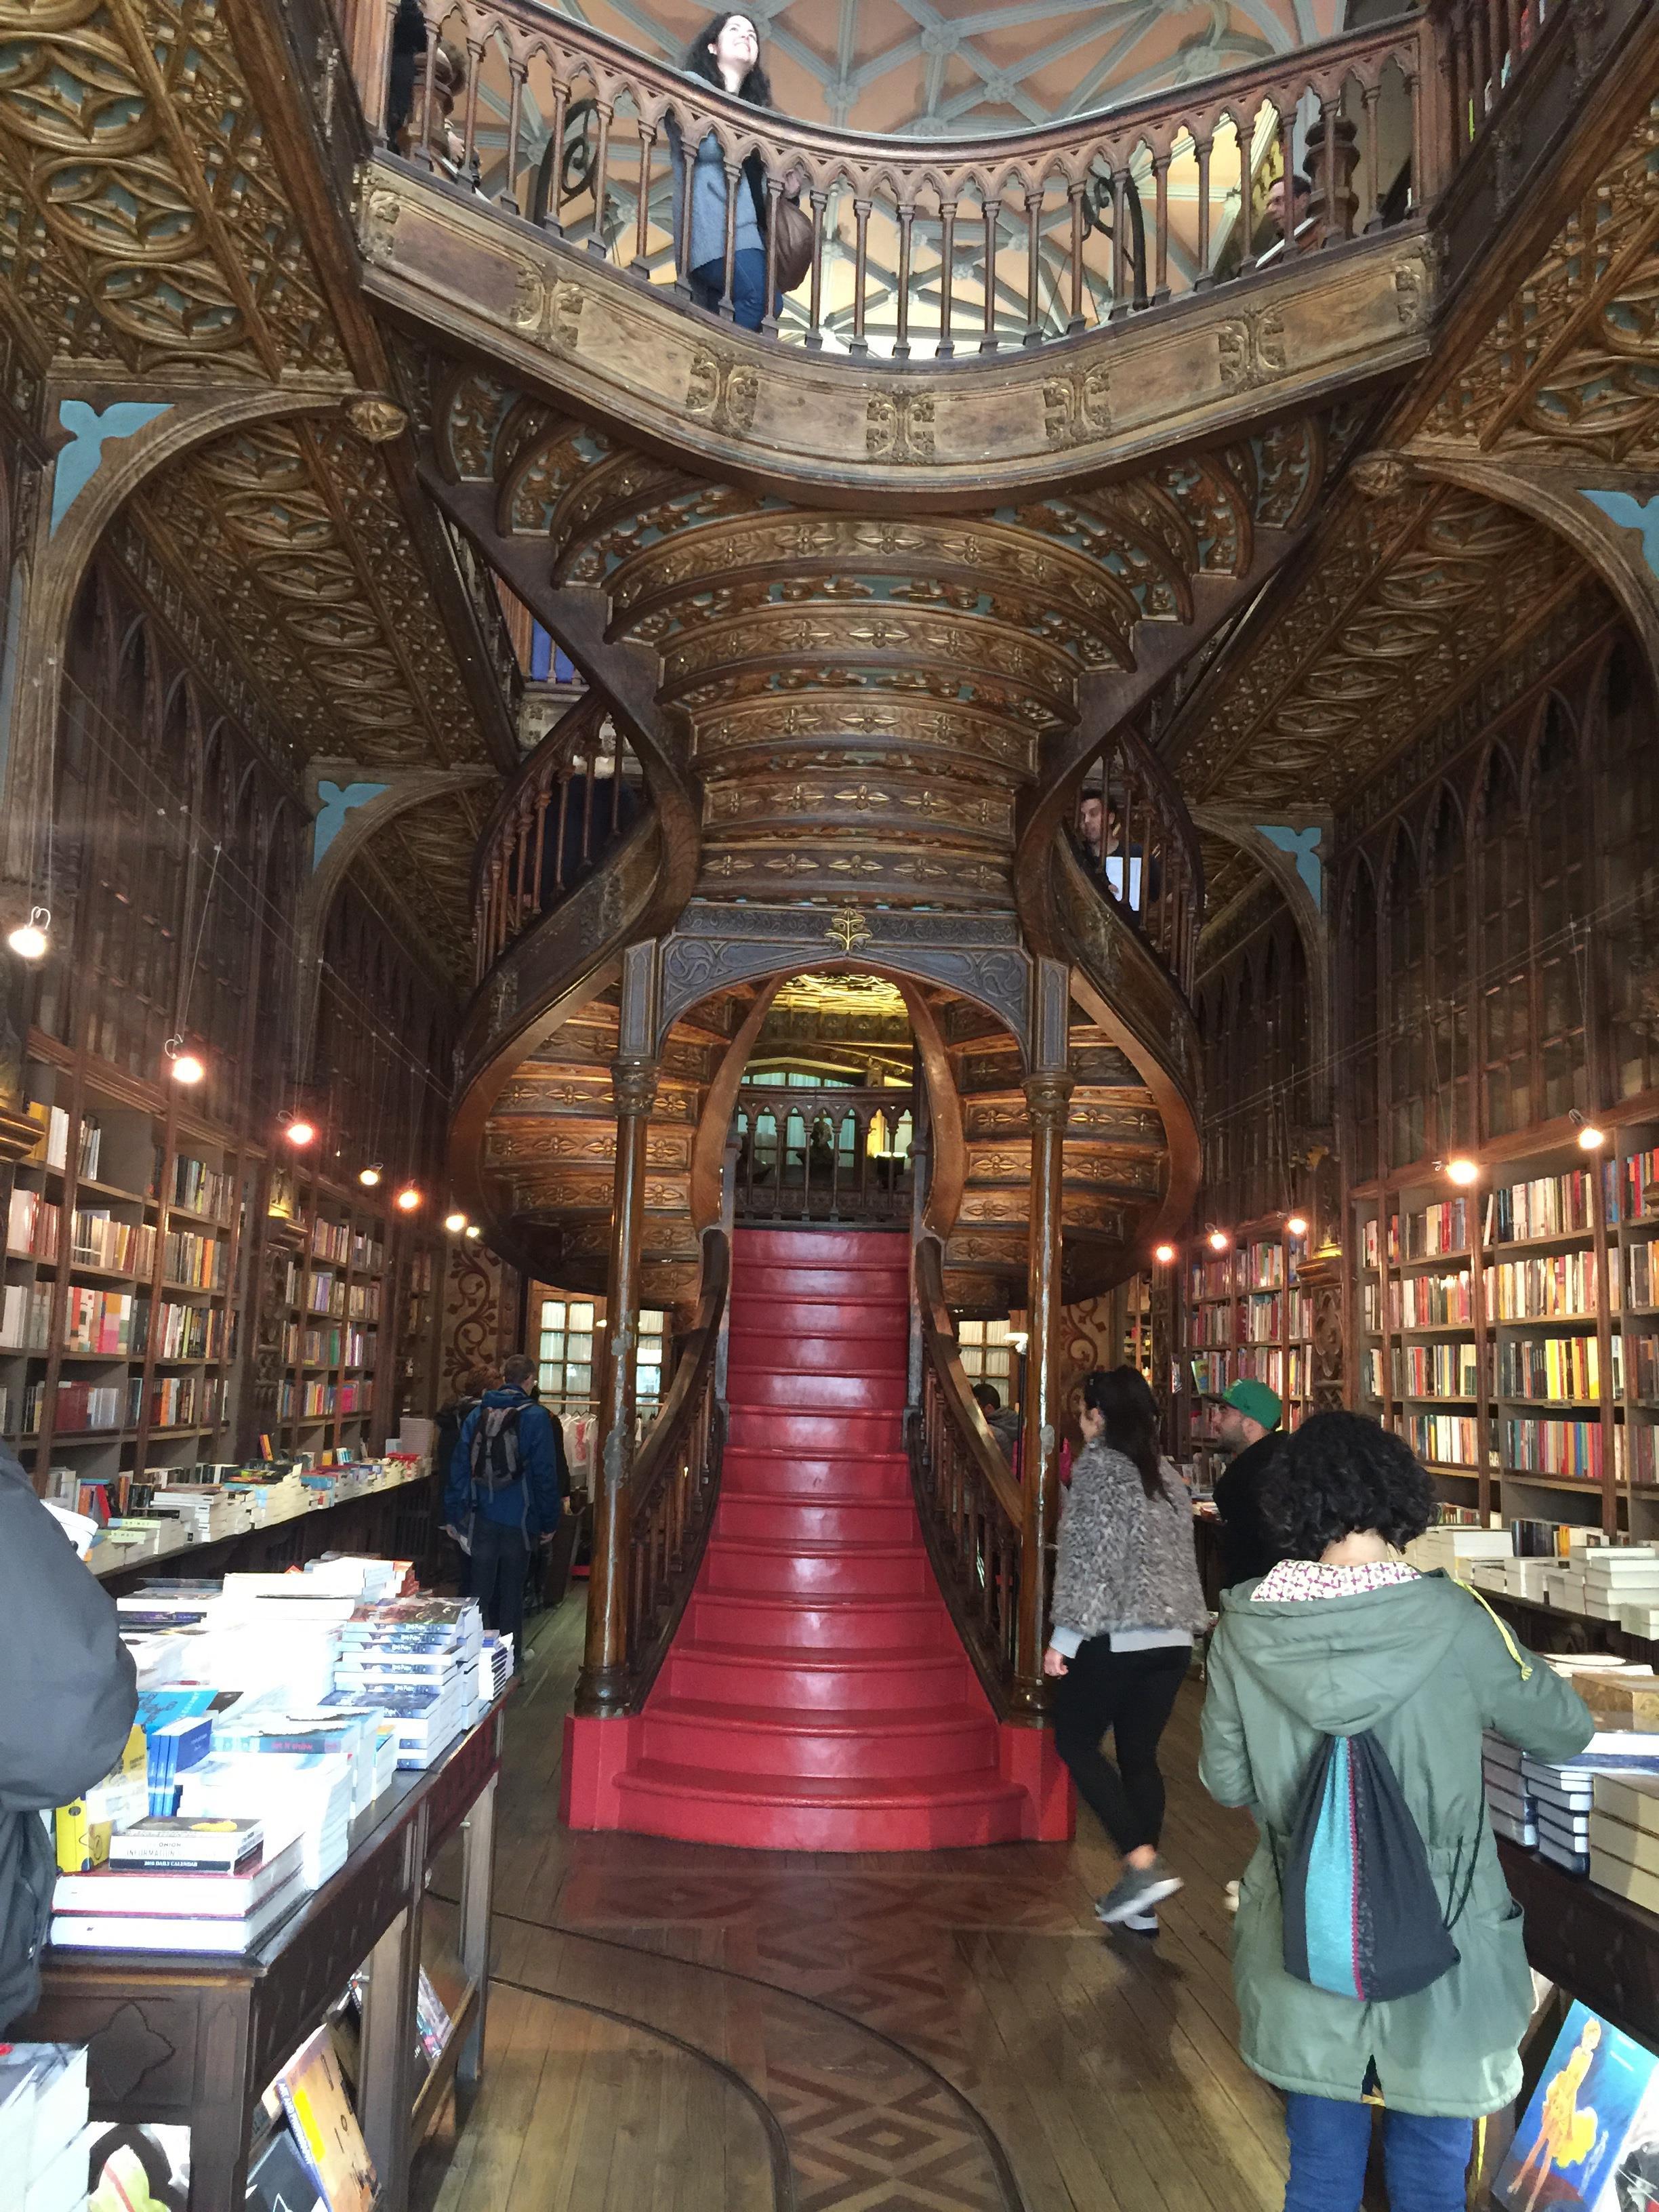 【携程攻略】波尔图莱罗书店景点,世界十大最美书店之一莱罗书店是